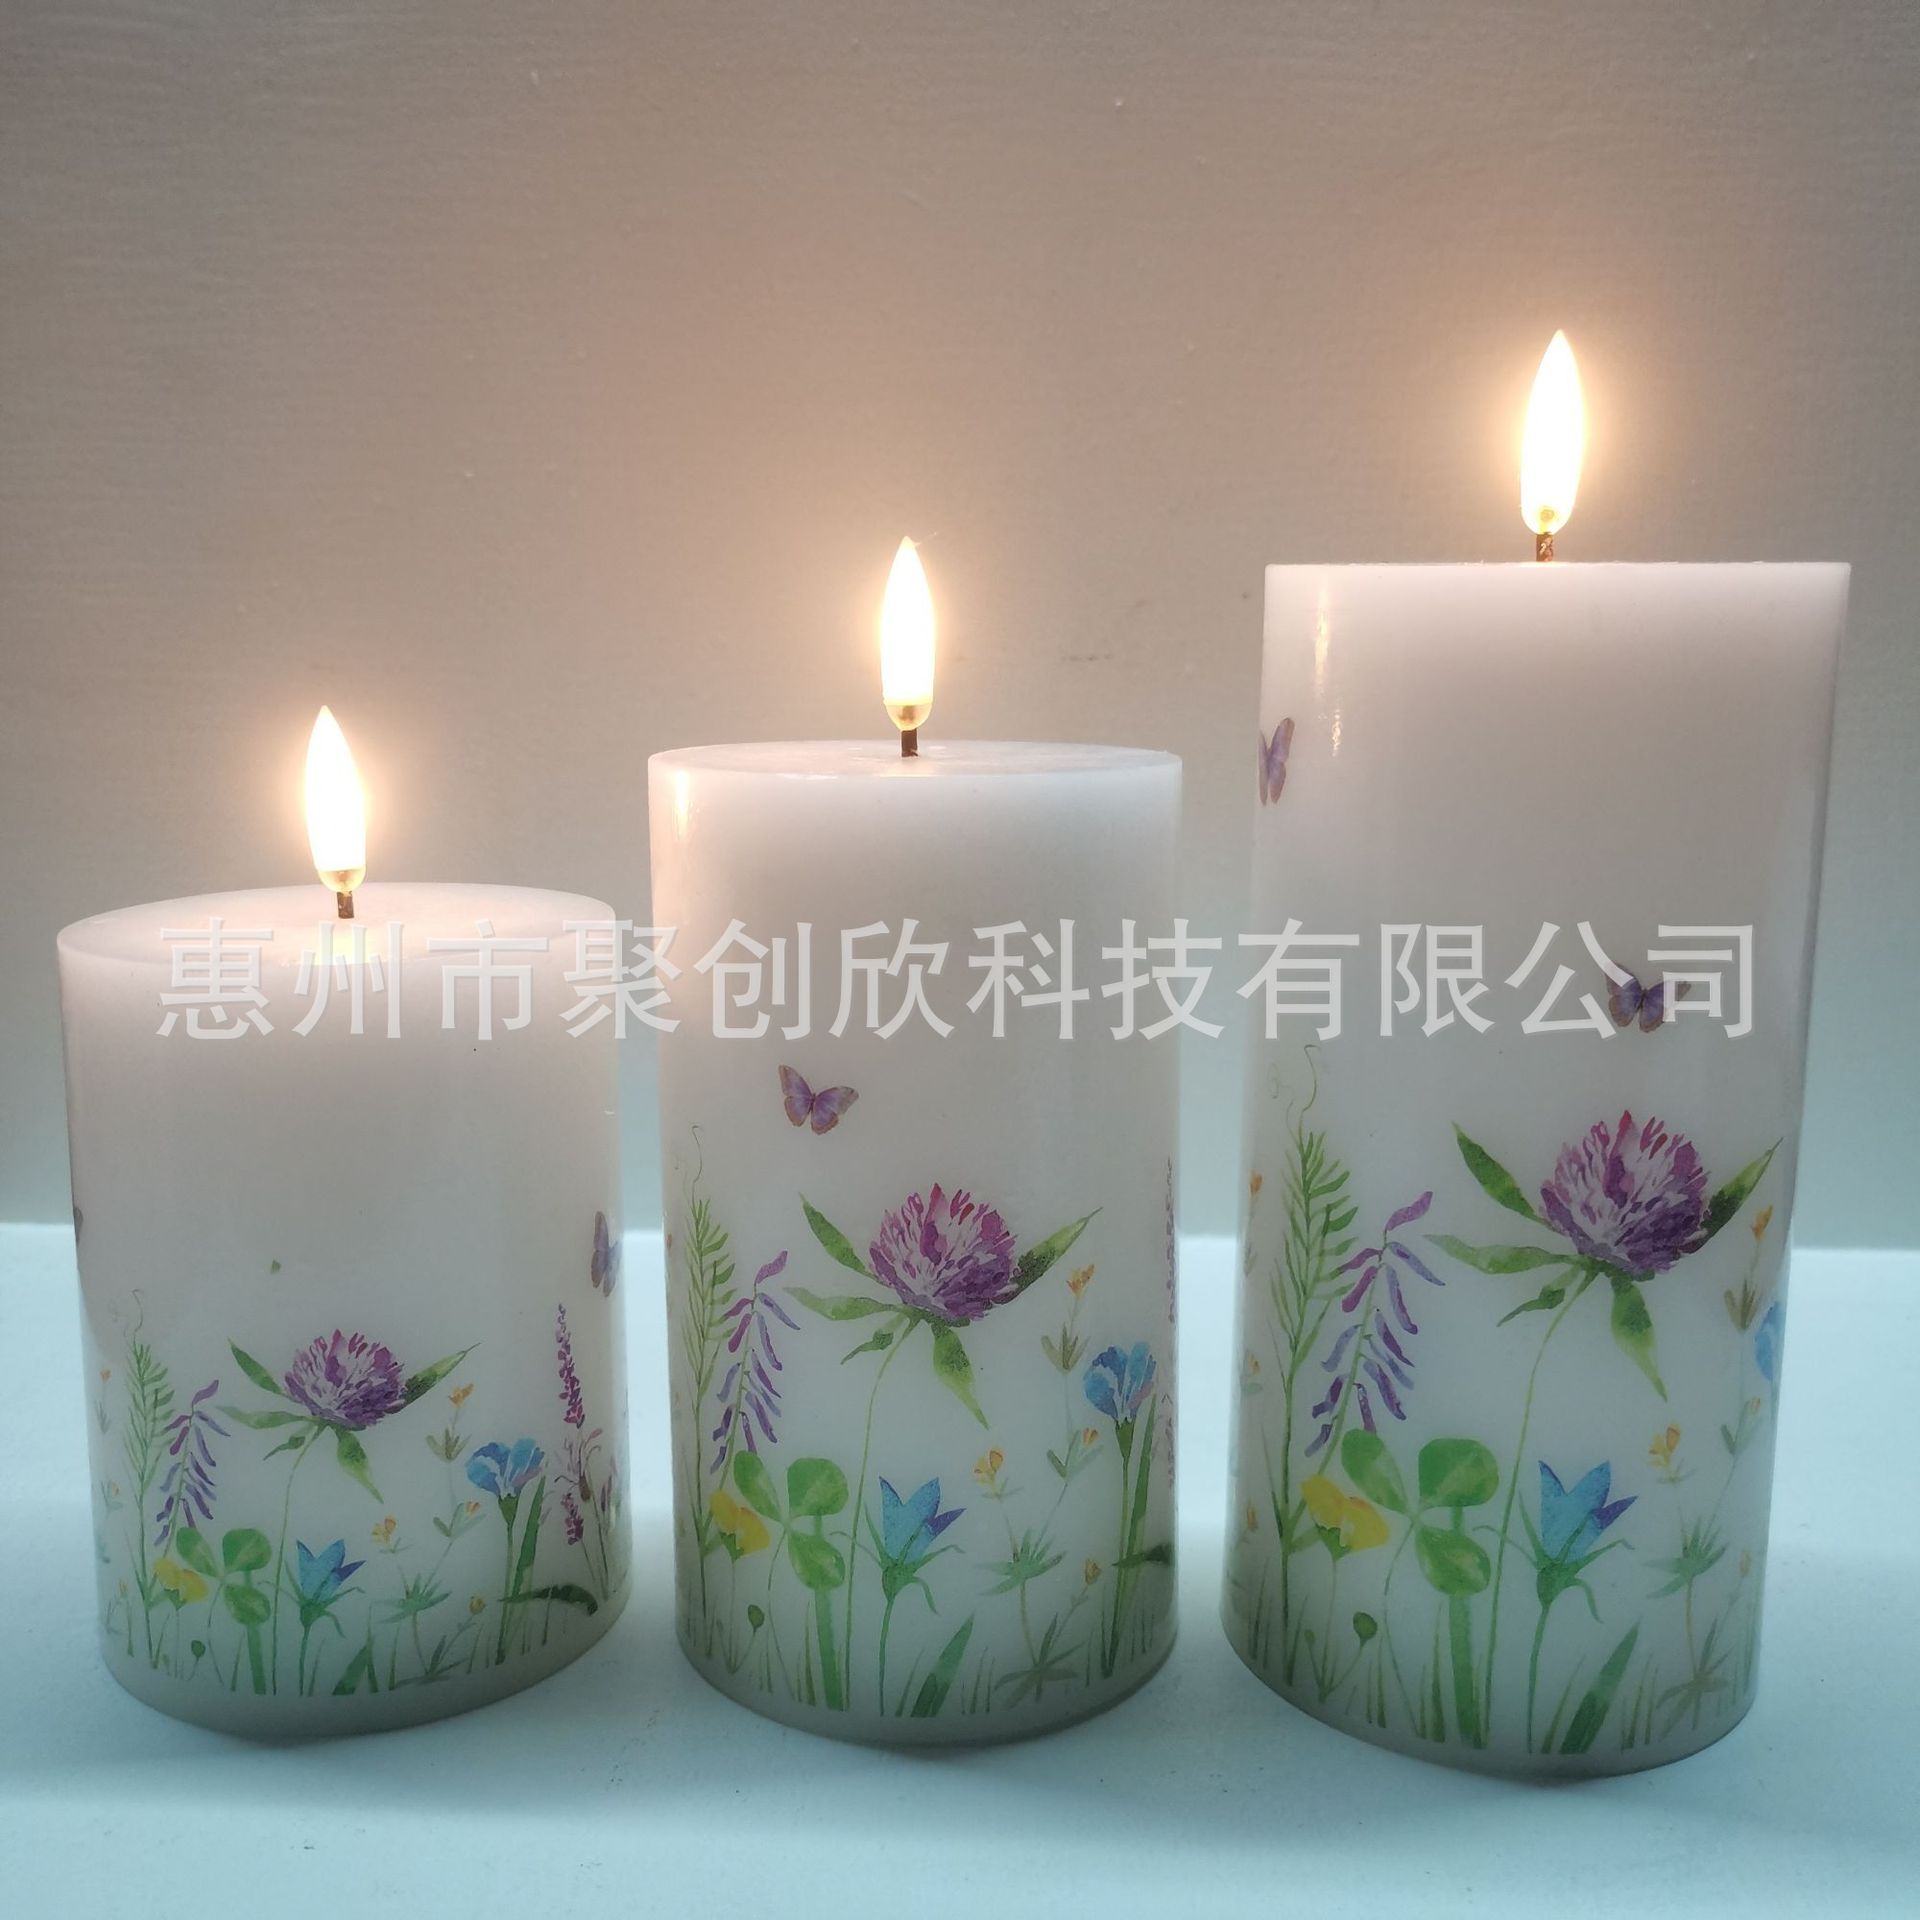 春天系列水转印贴纸用LED蜡烛表面装饰图案设计精美印刷色彩鲜艳